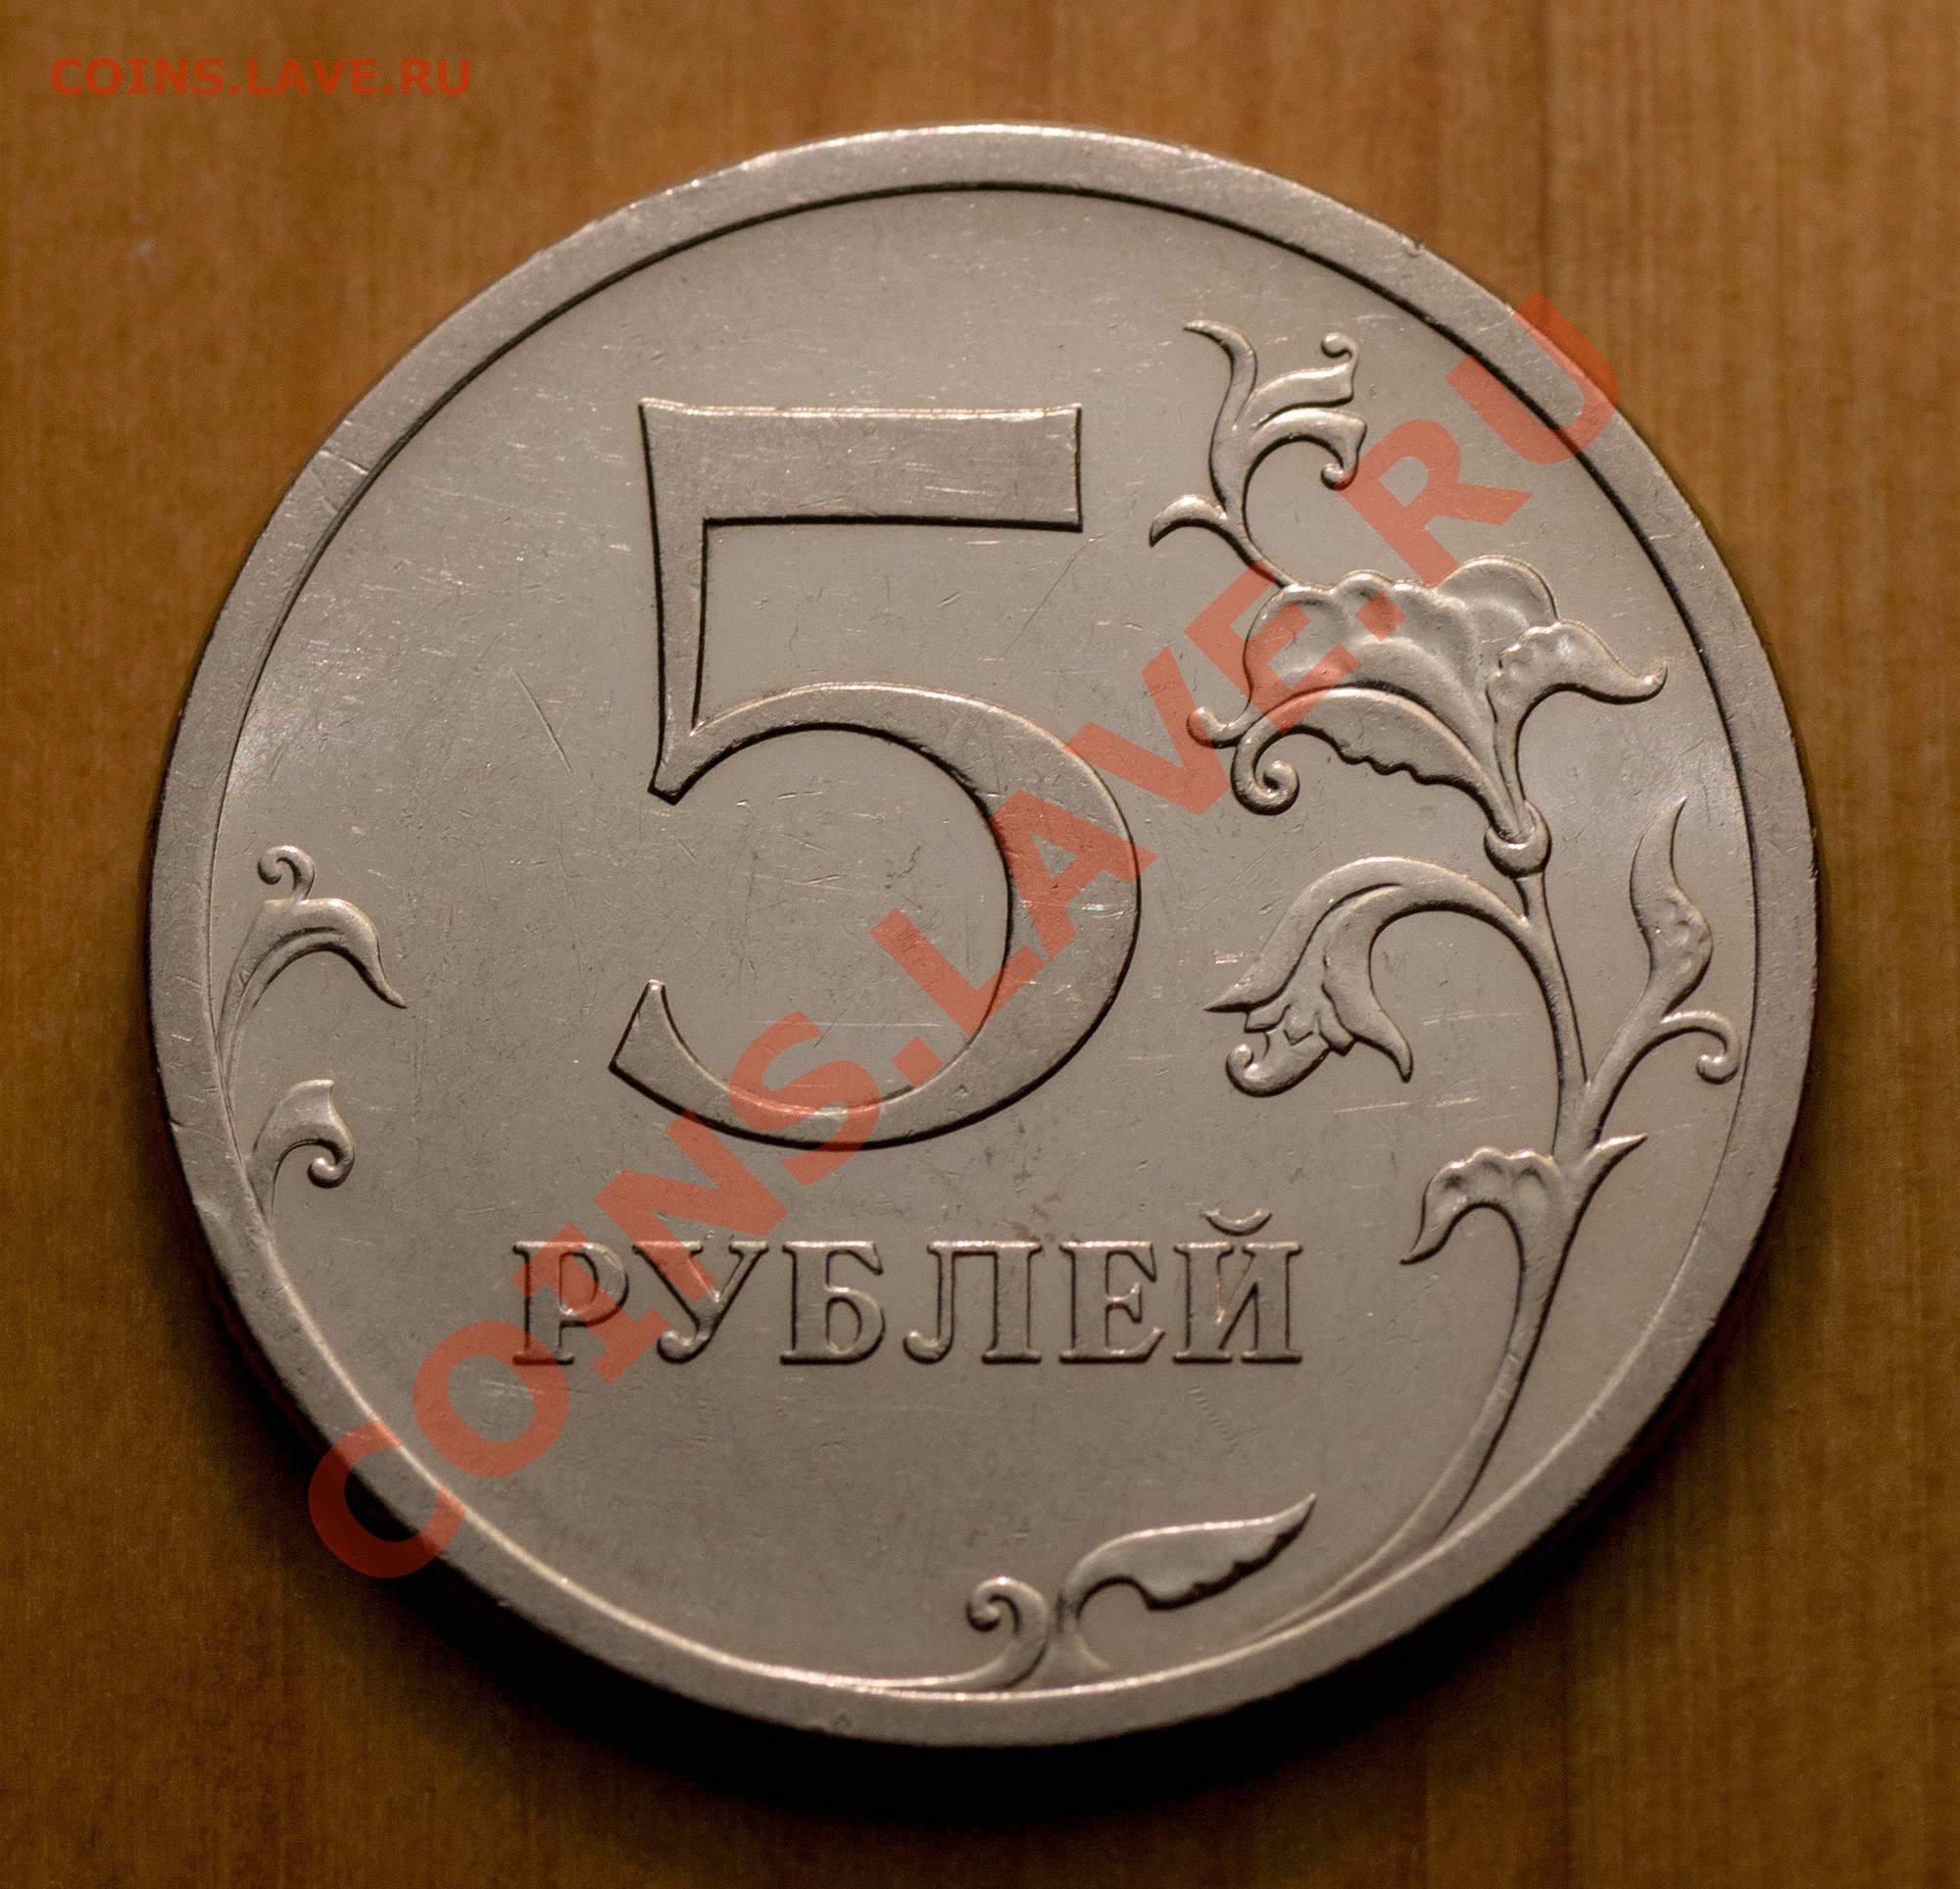 Рубль 5 29. Пять рублей 2009 г.штемпель 5.24. 5 Р класс. Монеты магнит. 5р класс картинки.